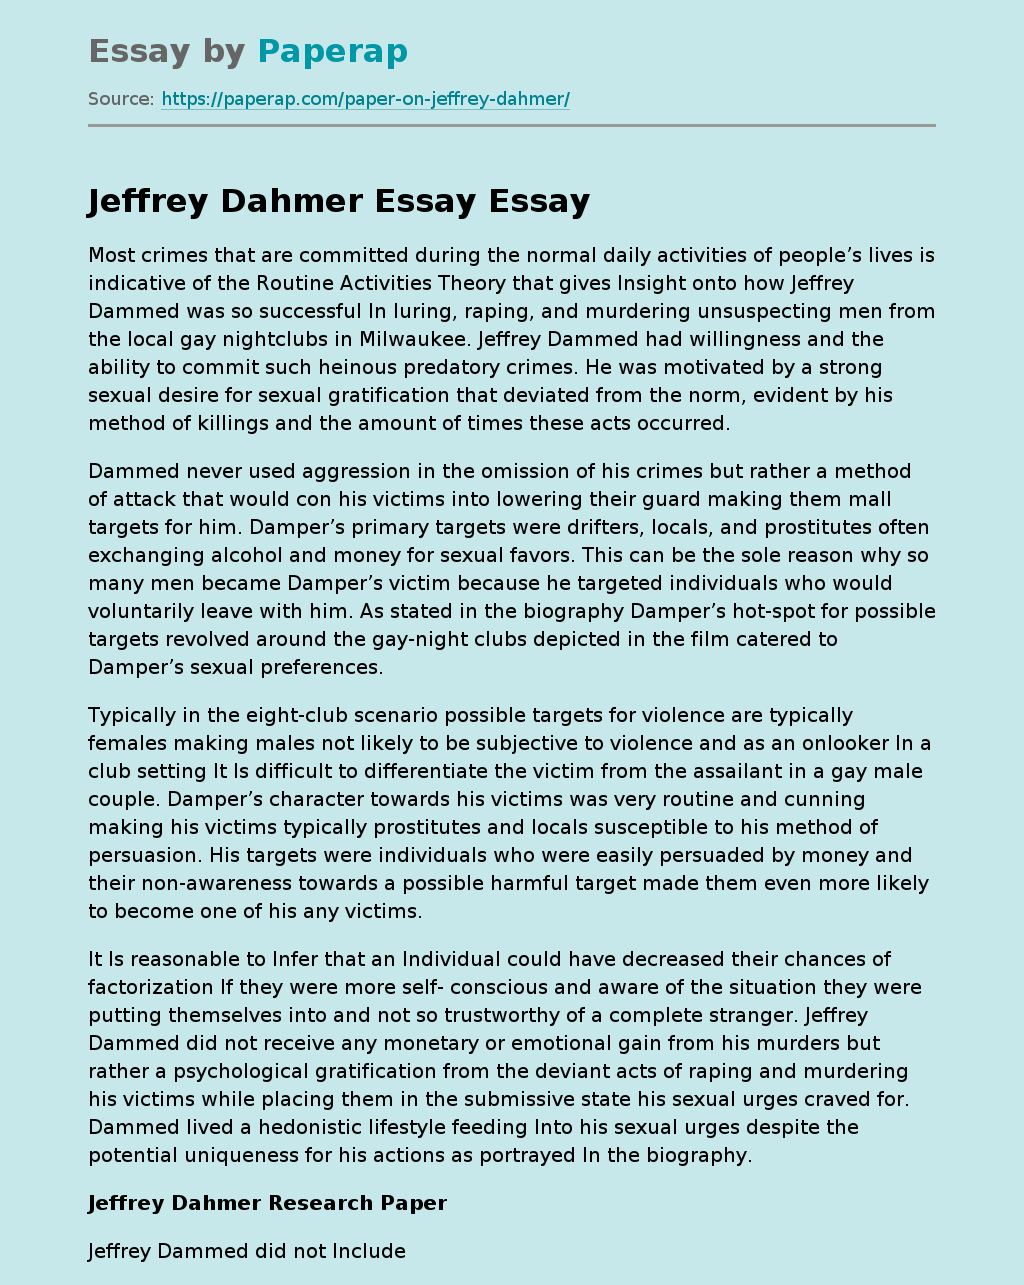 Jeffrey Dahmer American Serial Killer